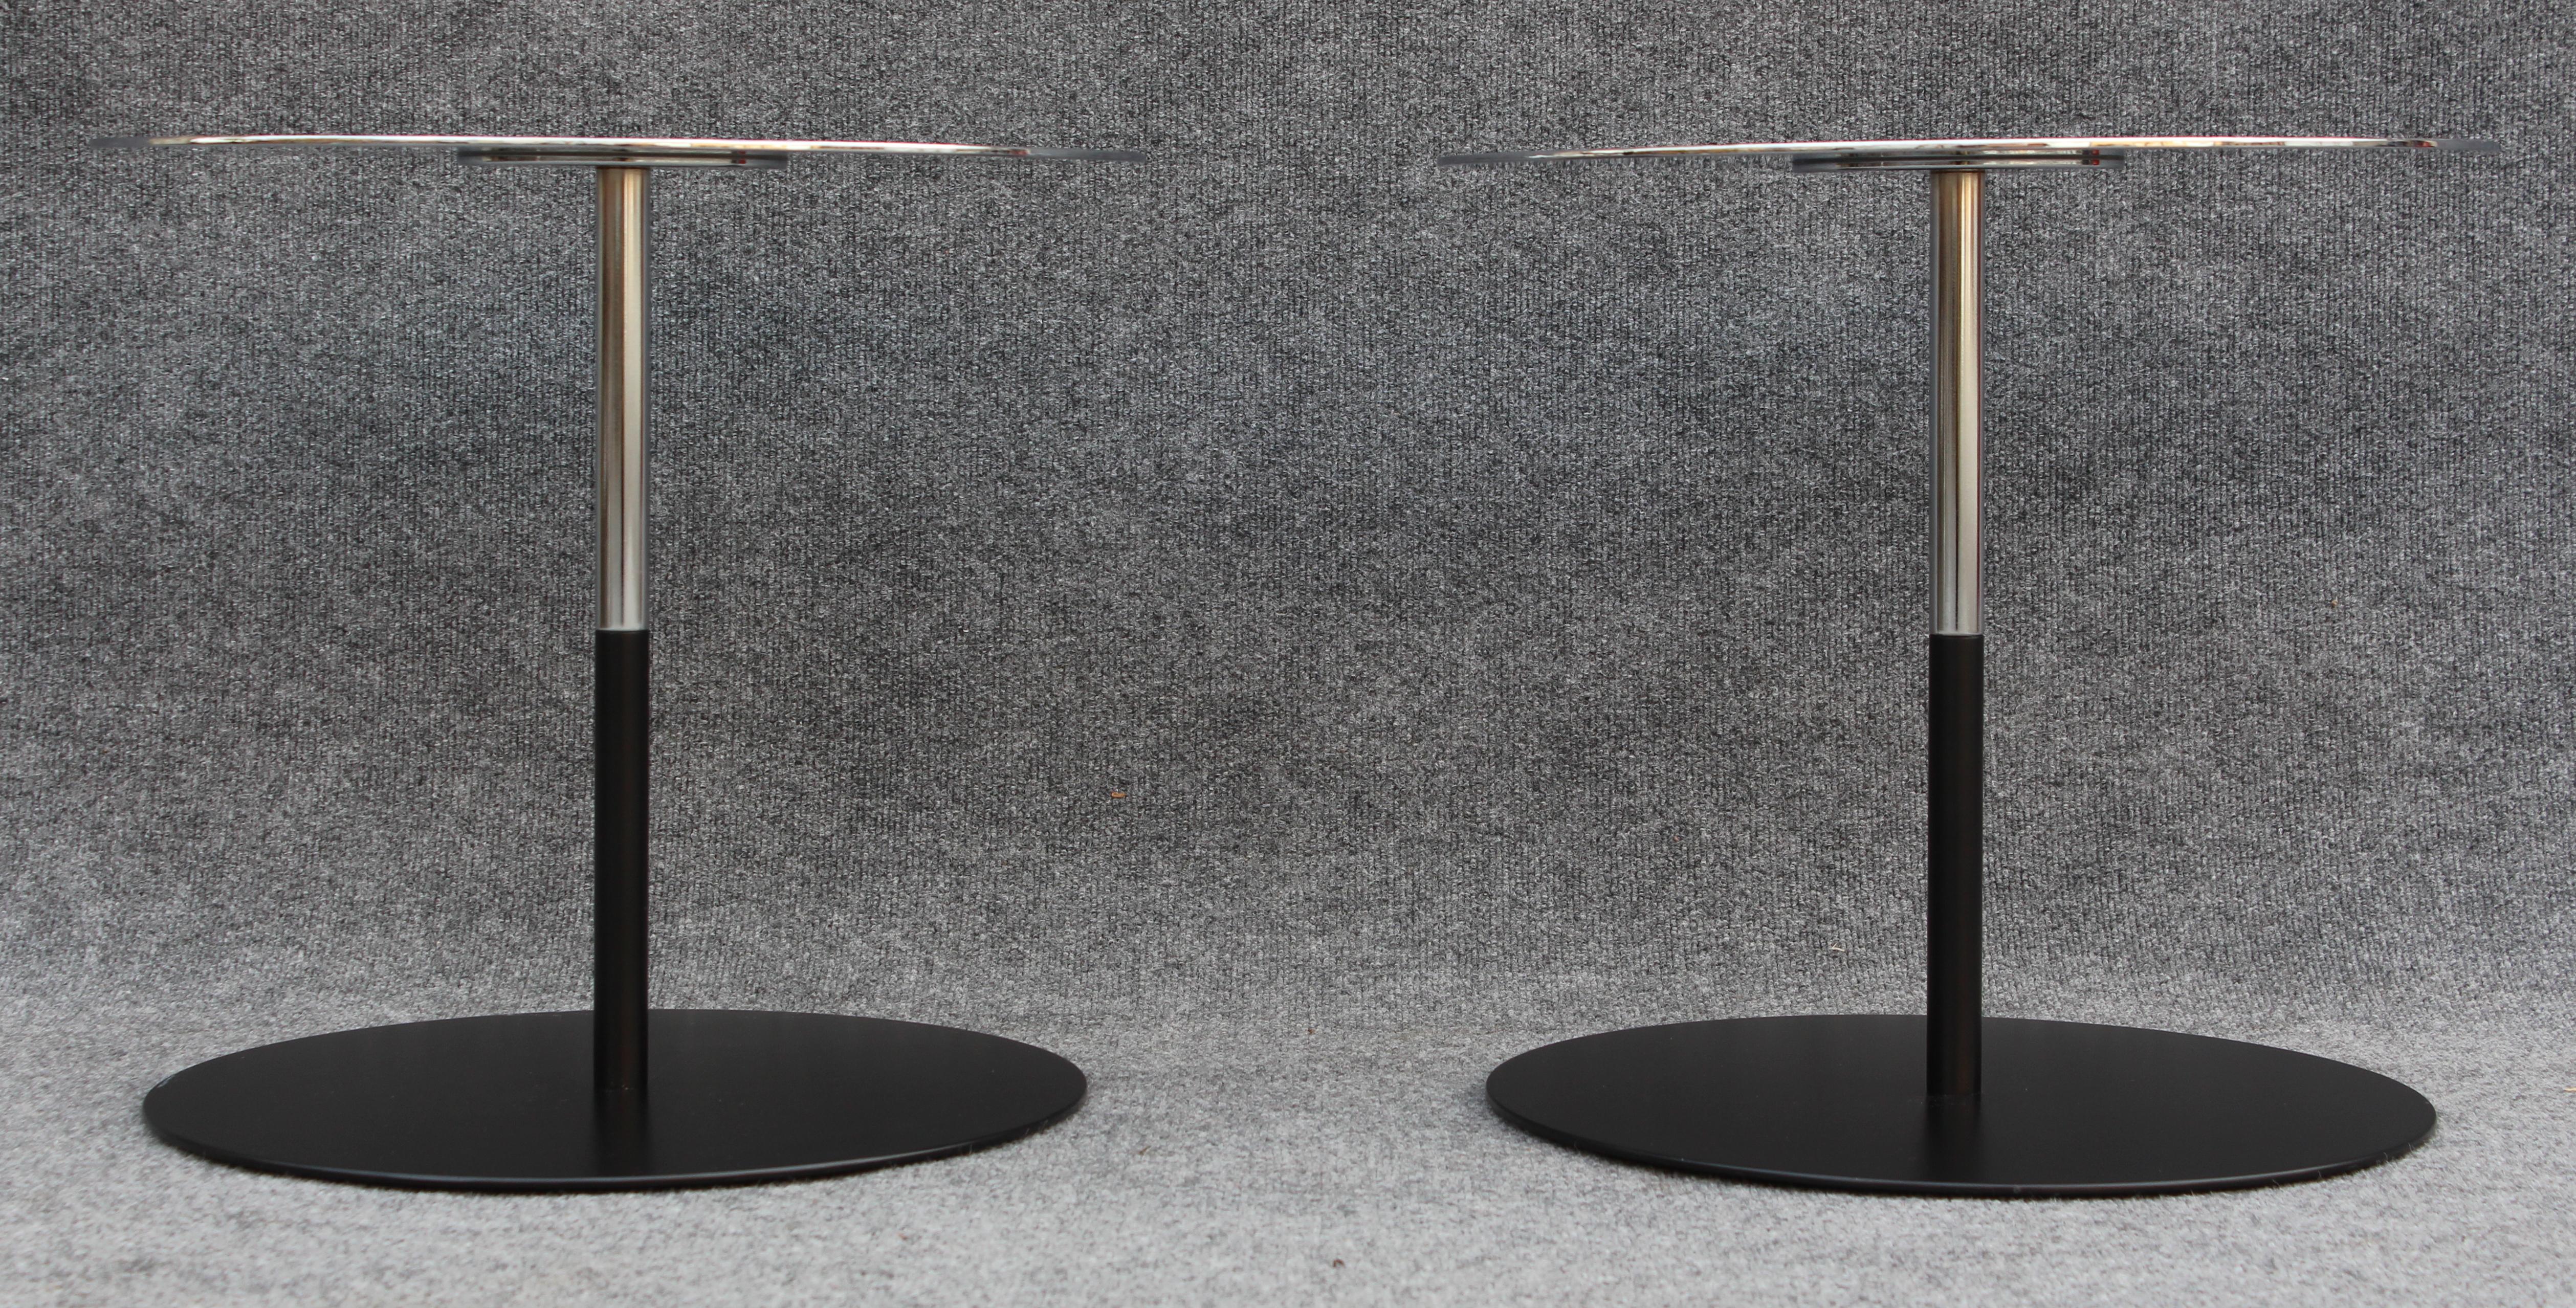 Dieses in Deutschland von Keilhauer entworfene Beistelltischpaar ist Teil der Boxcar-Linie, die eine Reihe von Möbeln umfasst, darunter Sofas, Stühle und Couchtische. Dieses Modell, das 4382, hat eine zweifarbige Oberfläche aus glänzend verchromtem